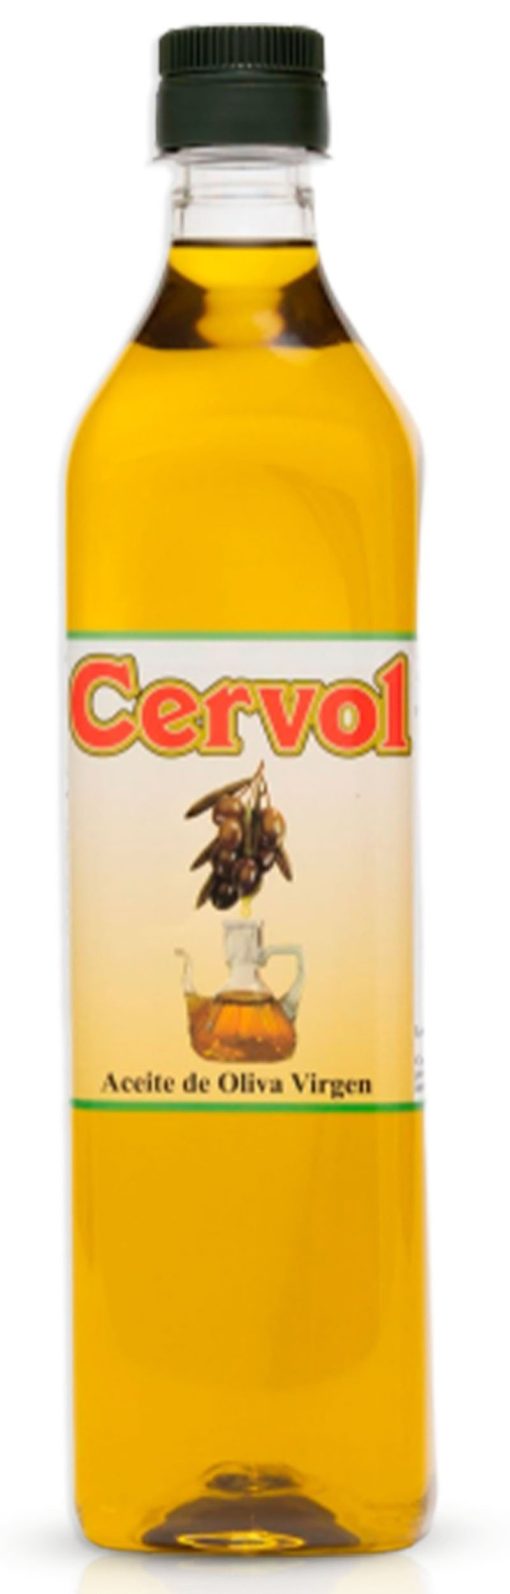 CERVOL Aceite de Oliva Virgen Coupage Virgen 1 L st 01 1668623528